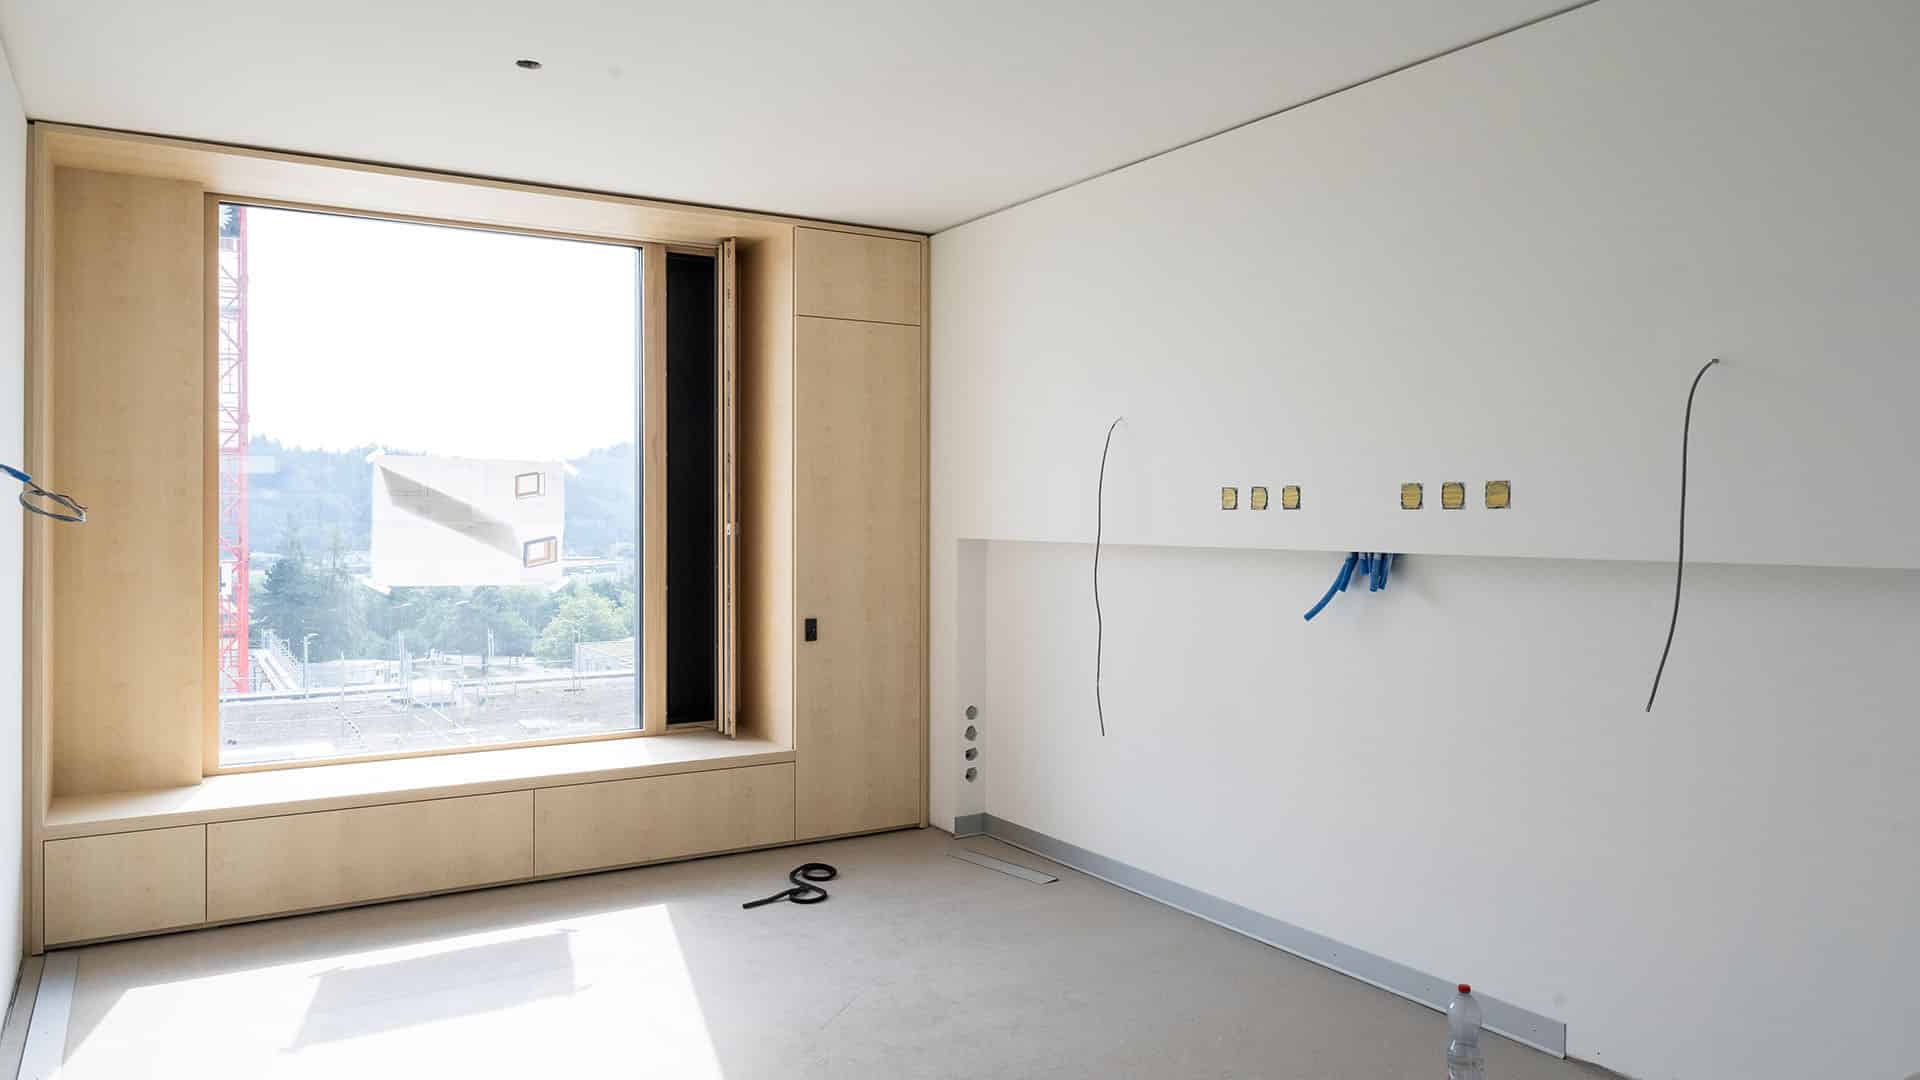 Patientenzimmer mit Fensterfront und weissen Wänden im KSB-Neubau